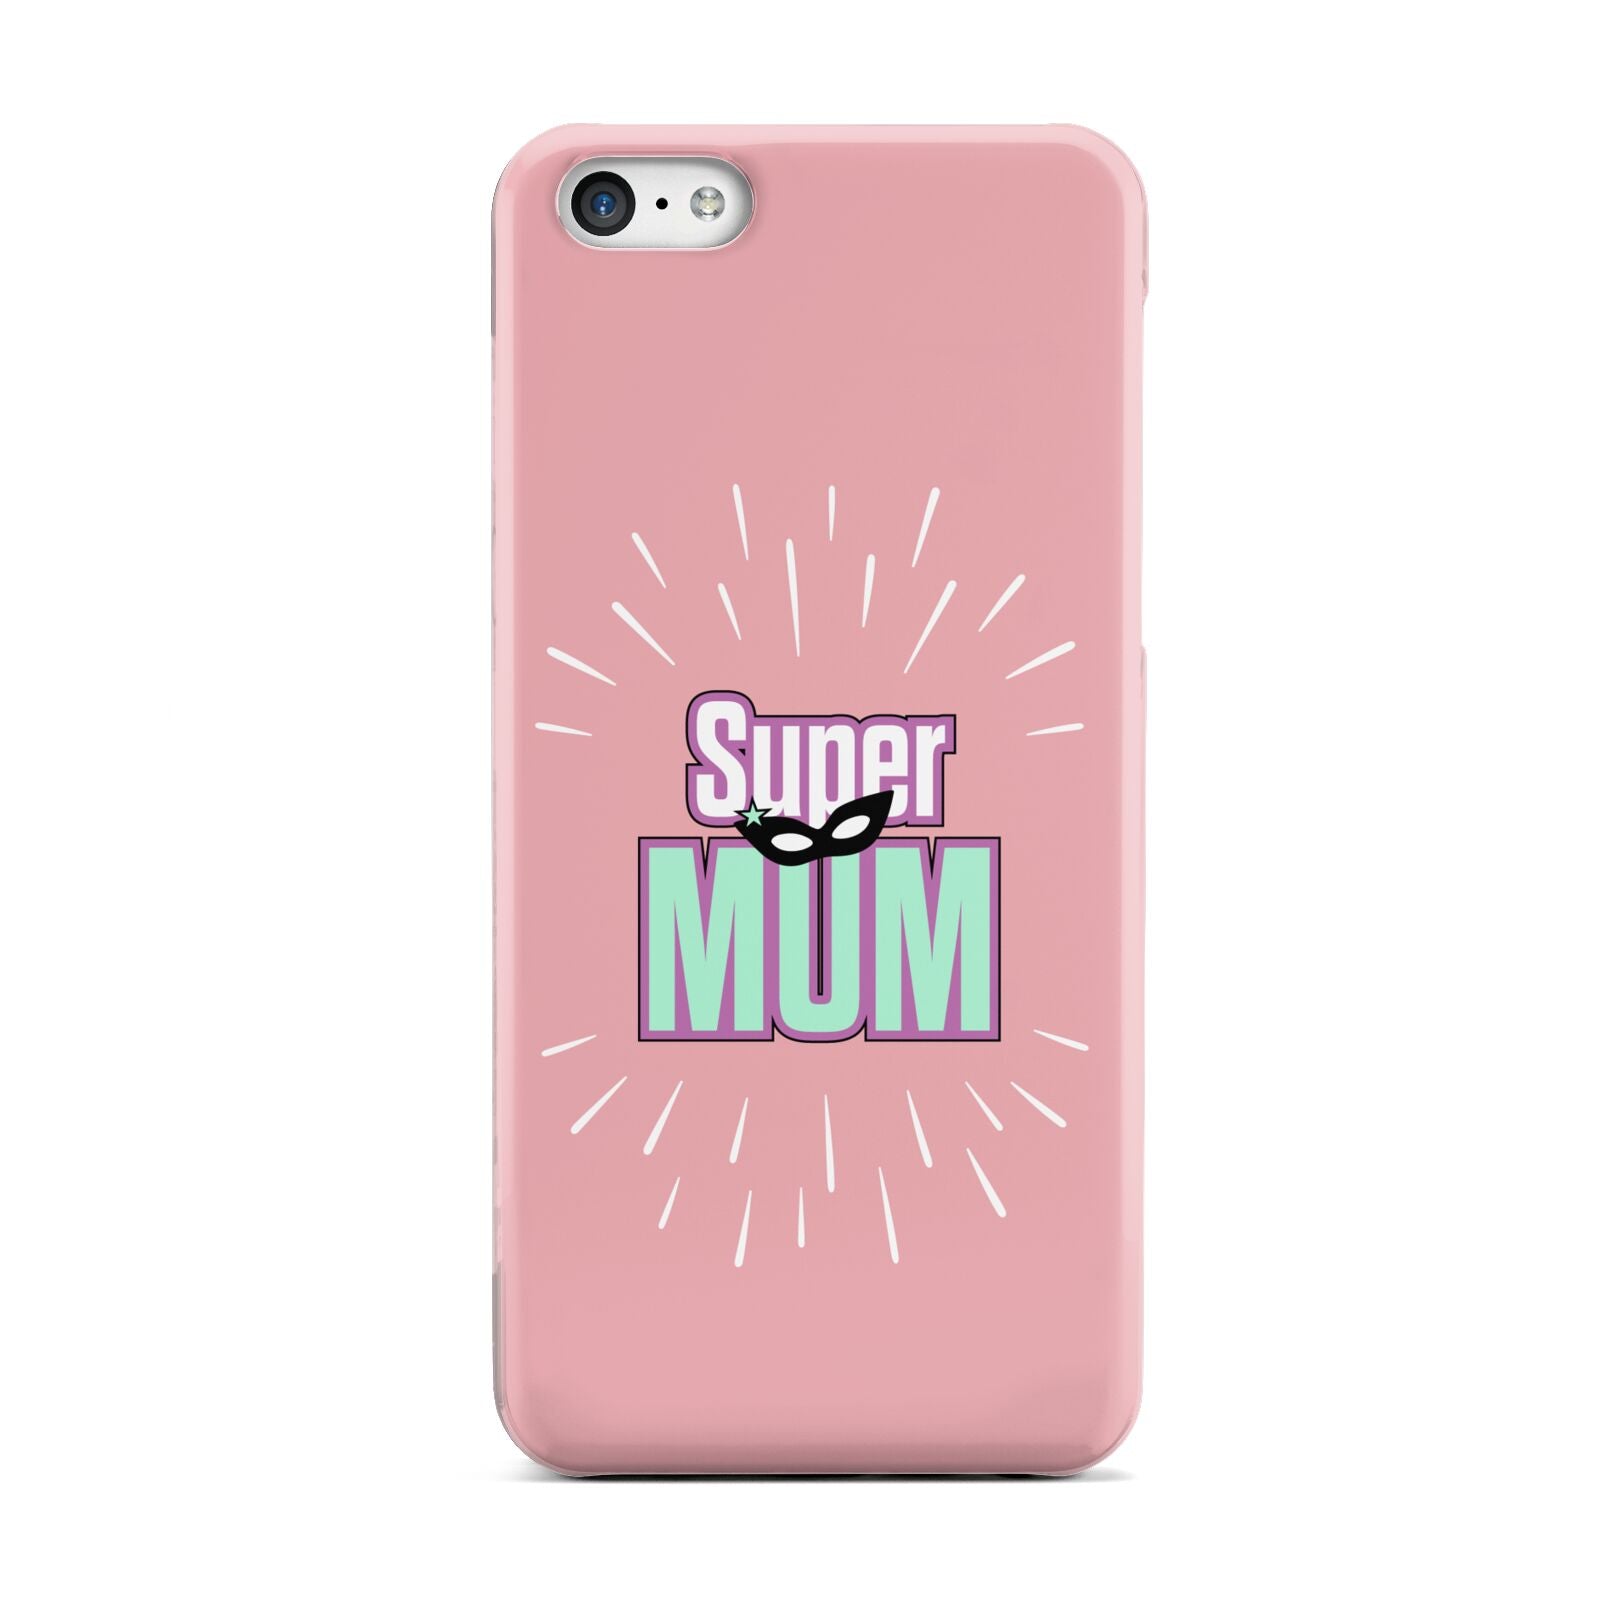 Super Mum Mothers Day Apple iPhone 5c Case